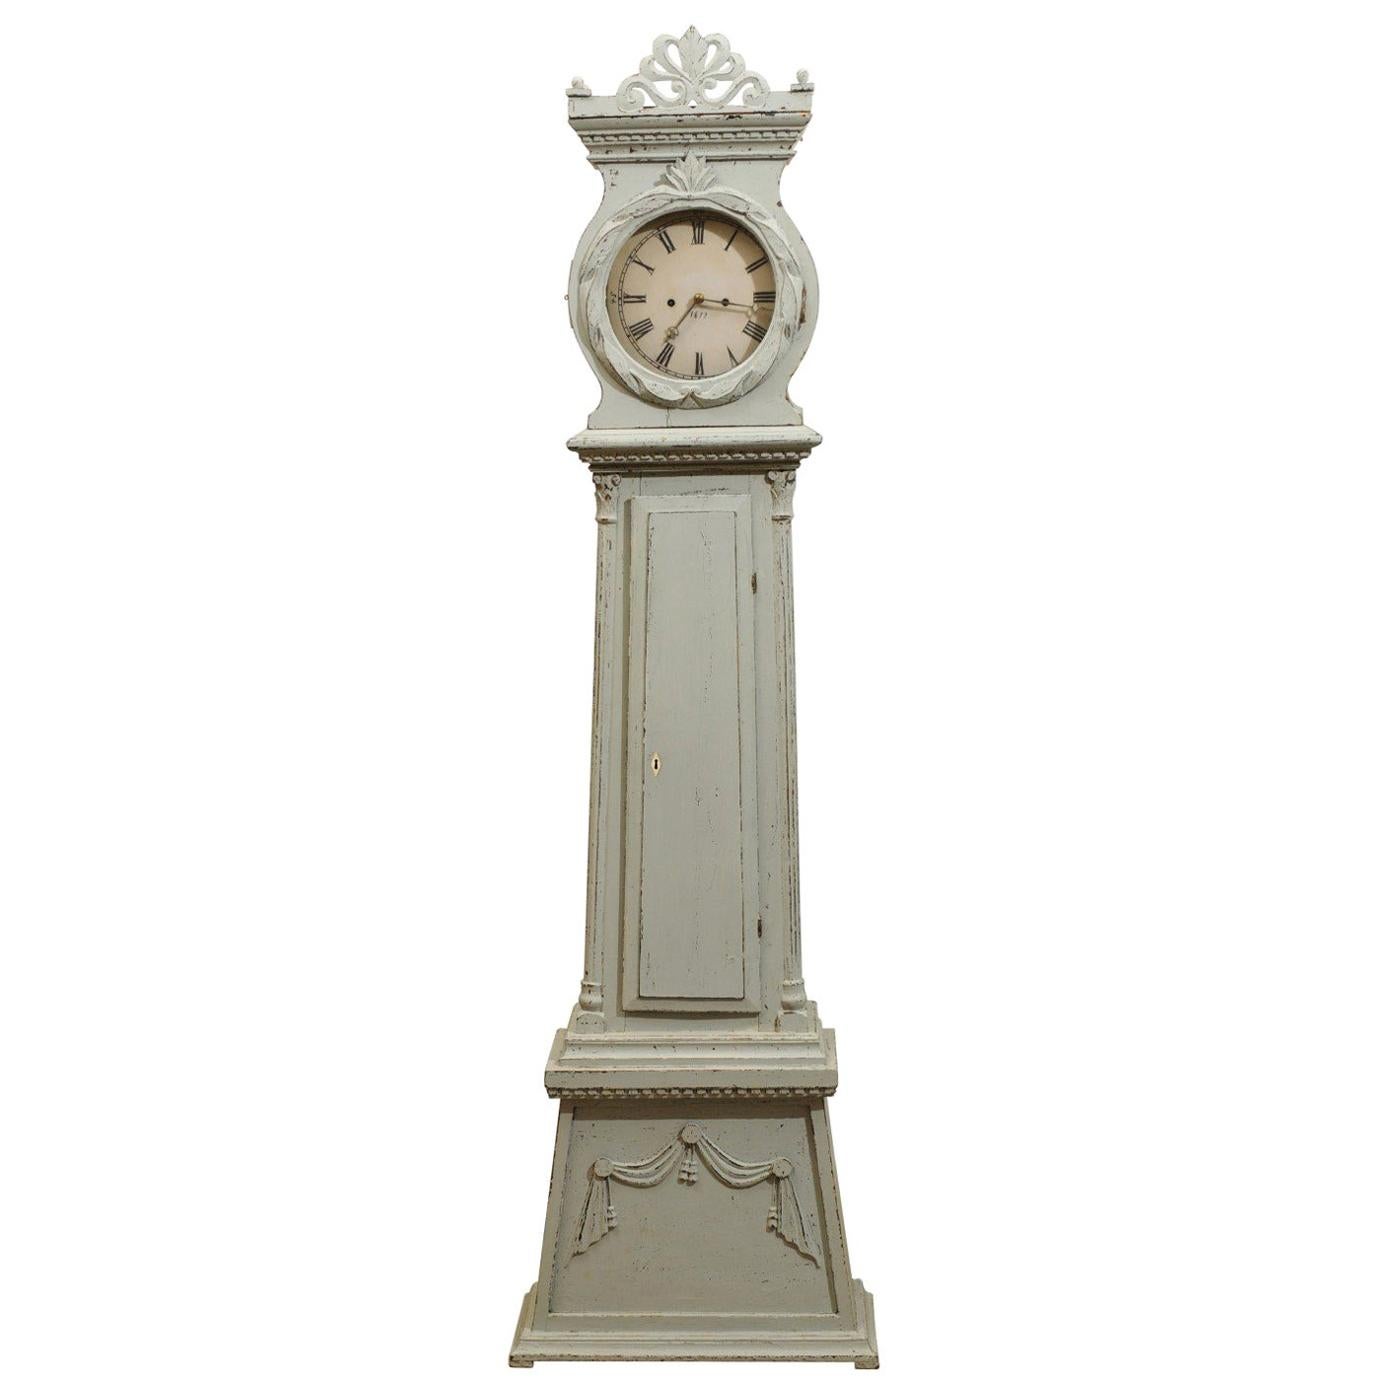 Horloge de parquet de style néoclassique suédois en bois peint avec palmette sculptée